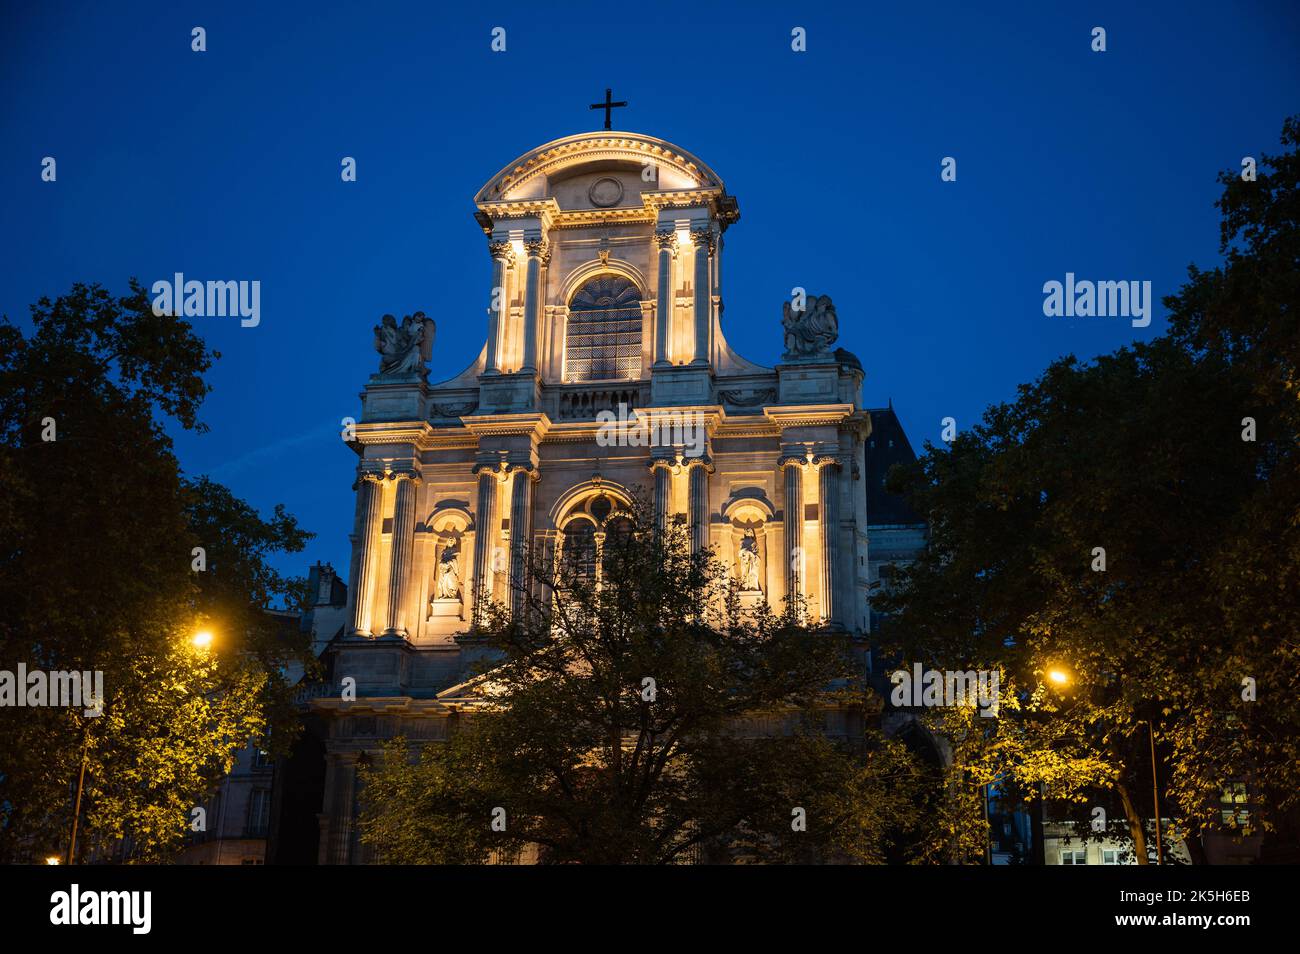 Saint-Gervais-Saint-Protais, römisch-katholische Kirche im 4.. Arrondissement von Paris, am Place Saint-Gervais im Stadtteil Marais, in der Nähe des Rathauses oder des Hotels de Ville, Blick bei Nacht Stockfoto